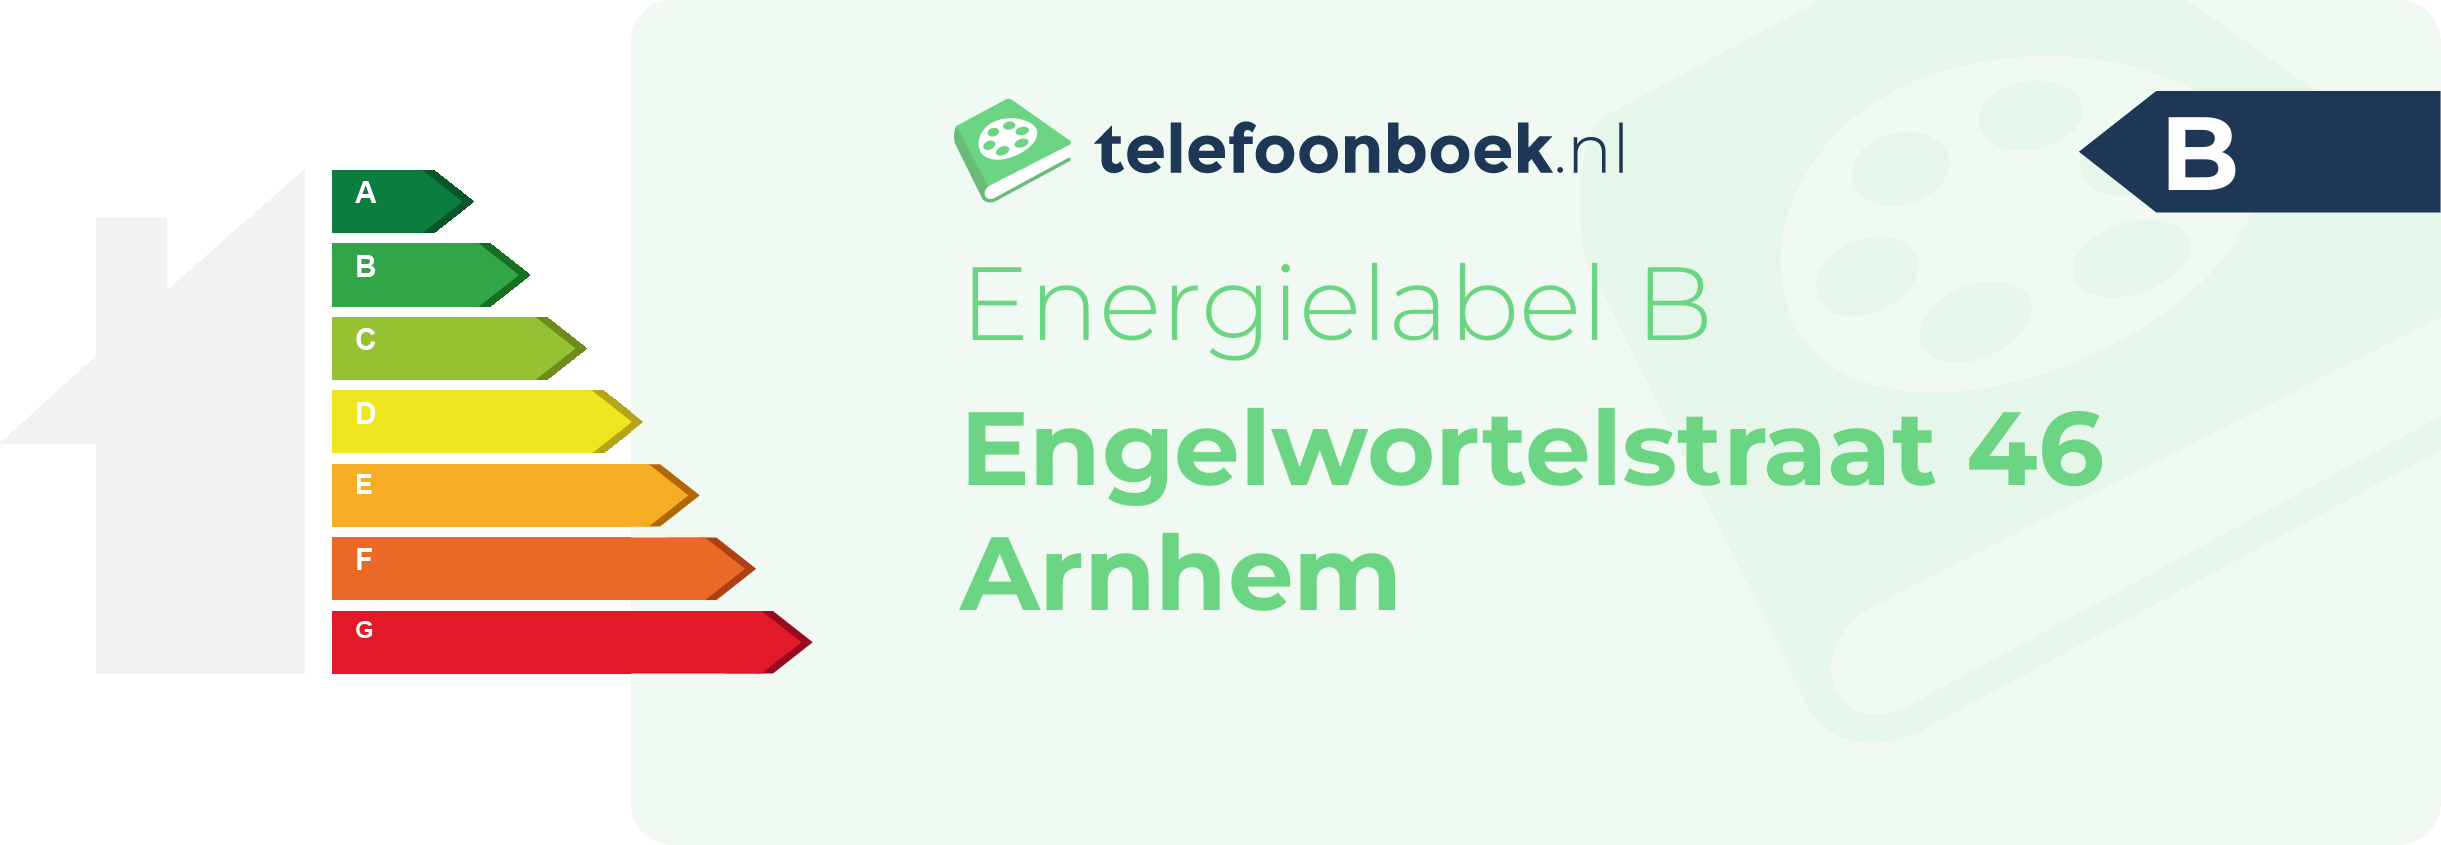 Energielabel Engelwortelstraat 46 Arnhem